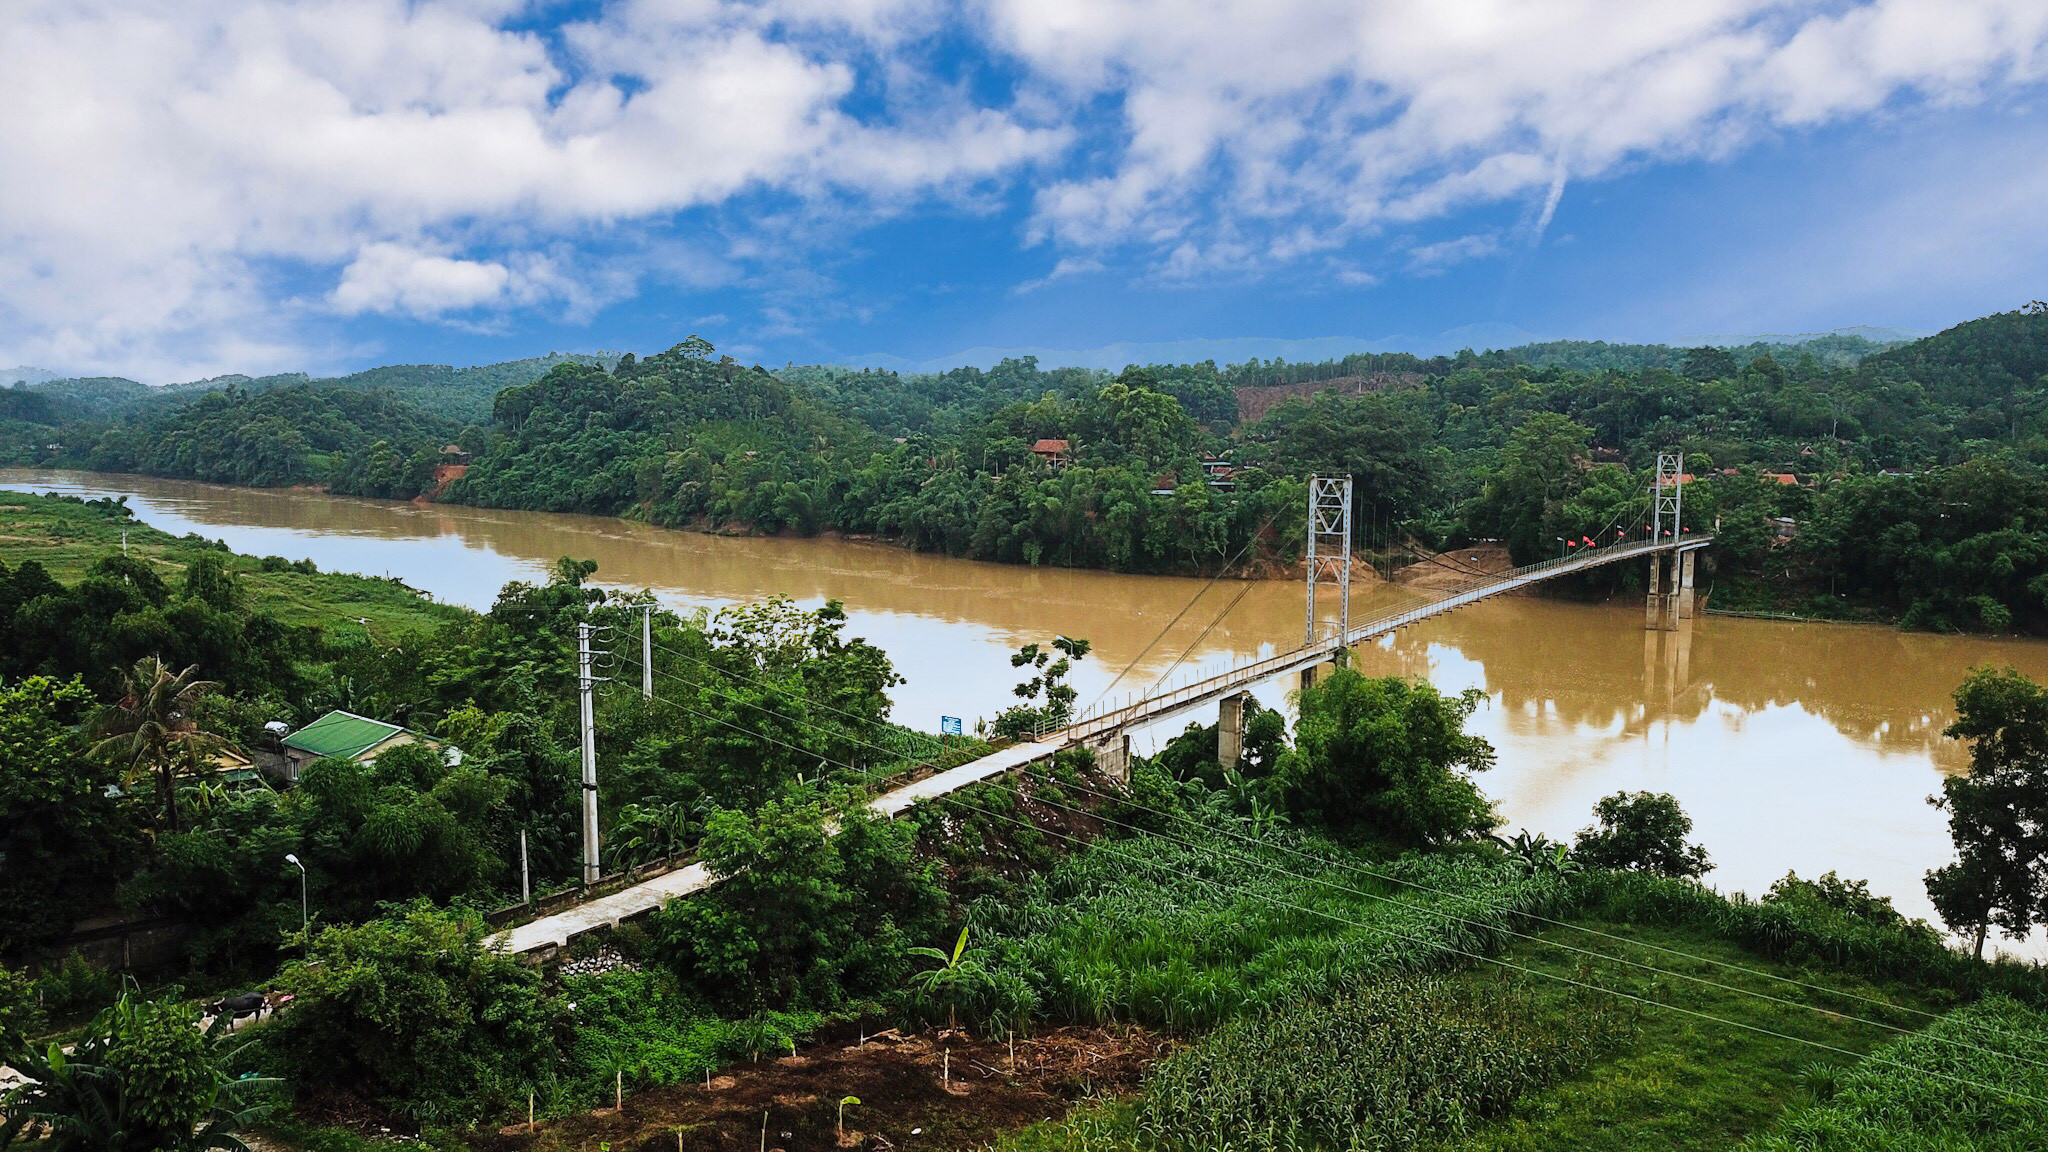 Đến với các bản làng trên địa bàn huyện Con Cuông, du khách thường được đi qua những chiếc cầu treo bắc qua sông, suối. Trong ảnh, cầu treo khe Rạn đến với bản du lịch cộng đồng khe Rạn, xã Bồng Khê. Ảnh: Hải Vương